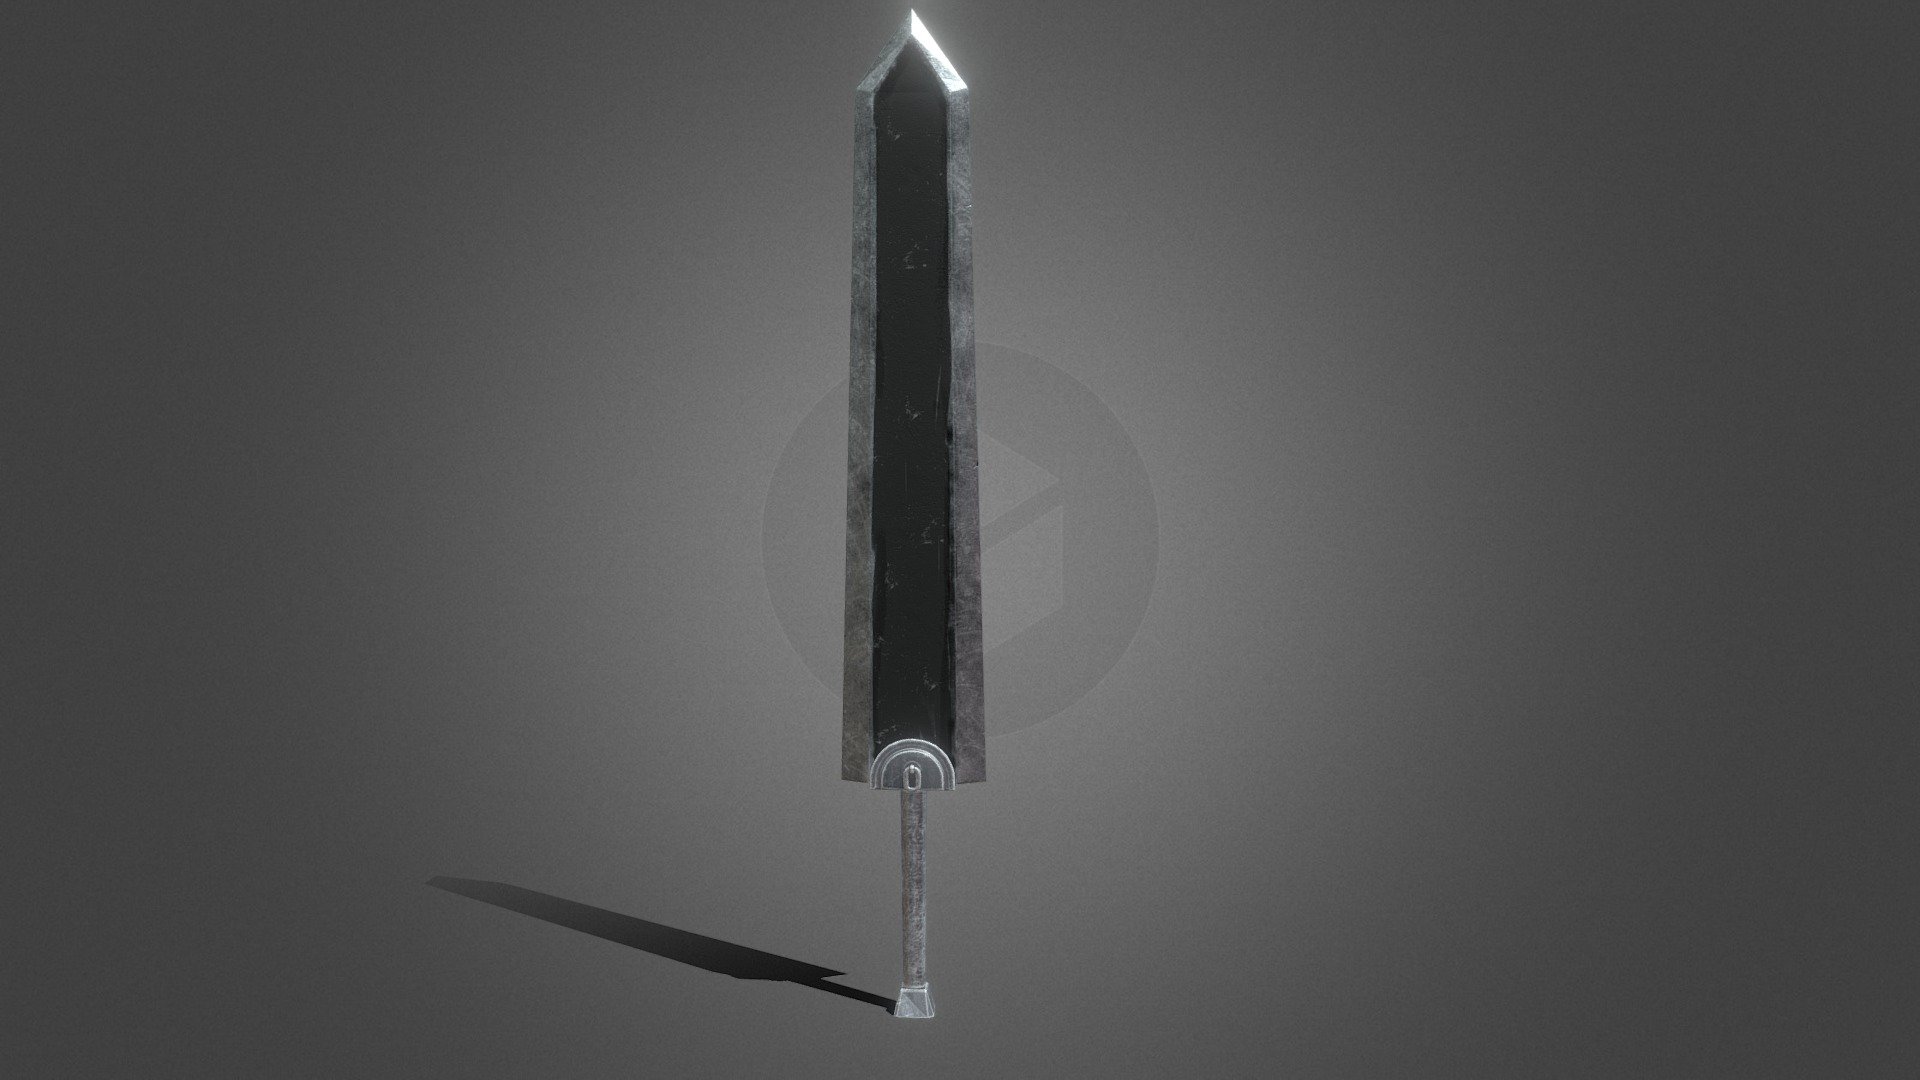 Berserk - Dragon Slayer Sword - Asset Free 3D Model in Melee 3DExport